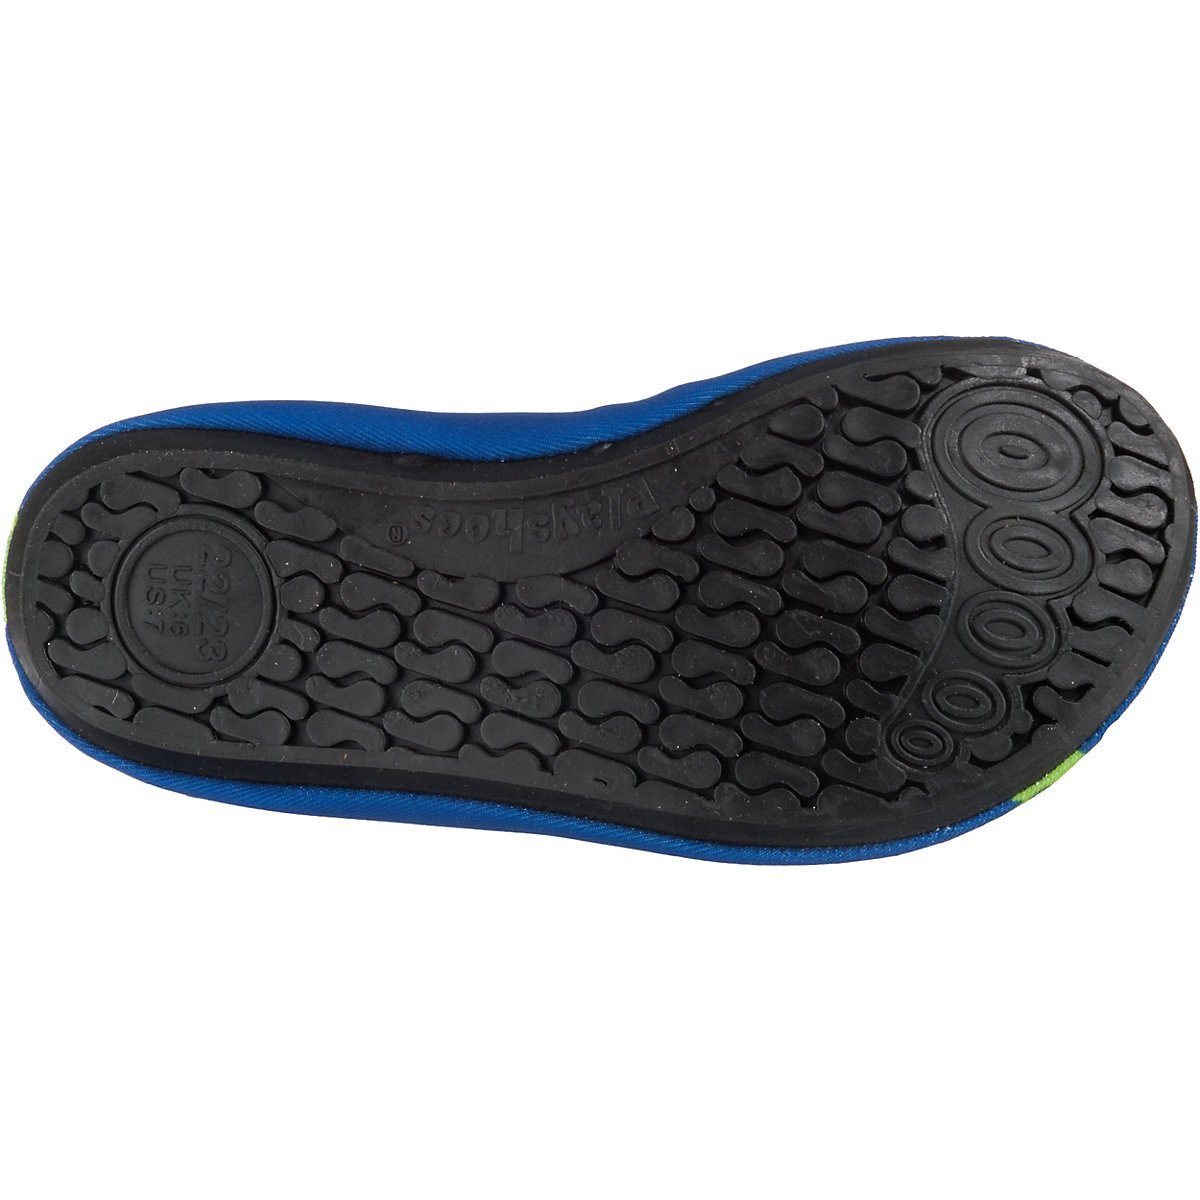 Wasserschuhe Badeschuh Passform, rutschhemmender Badeschuhe Sohle Playshoes Schwimmschuhe, flexible mit Barfuß-Schuh Motiv Krodkodil-blau